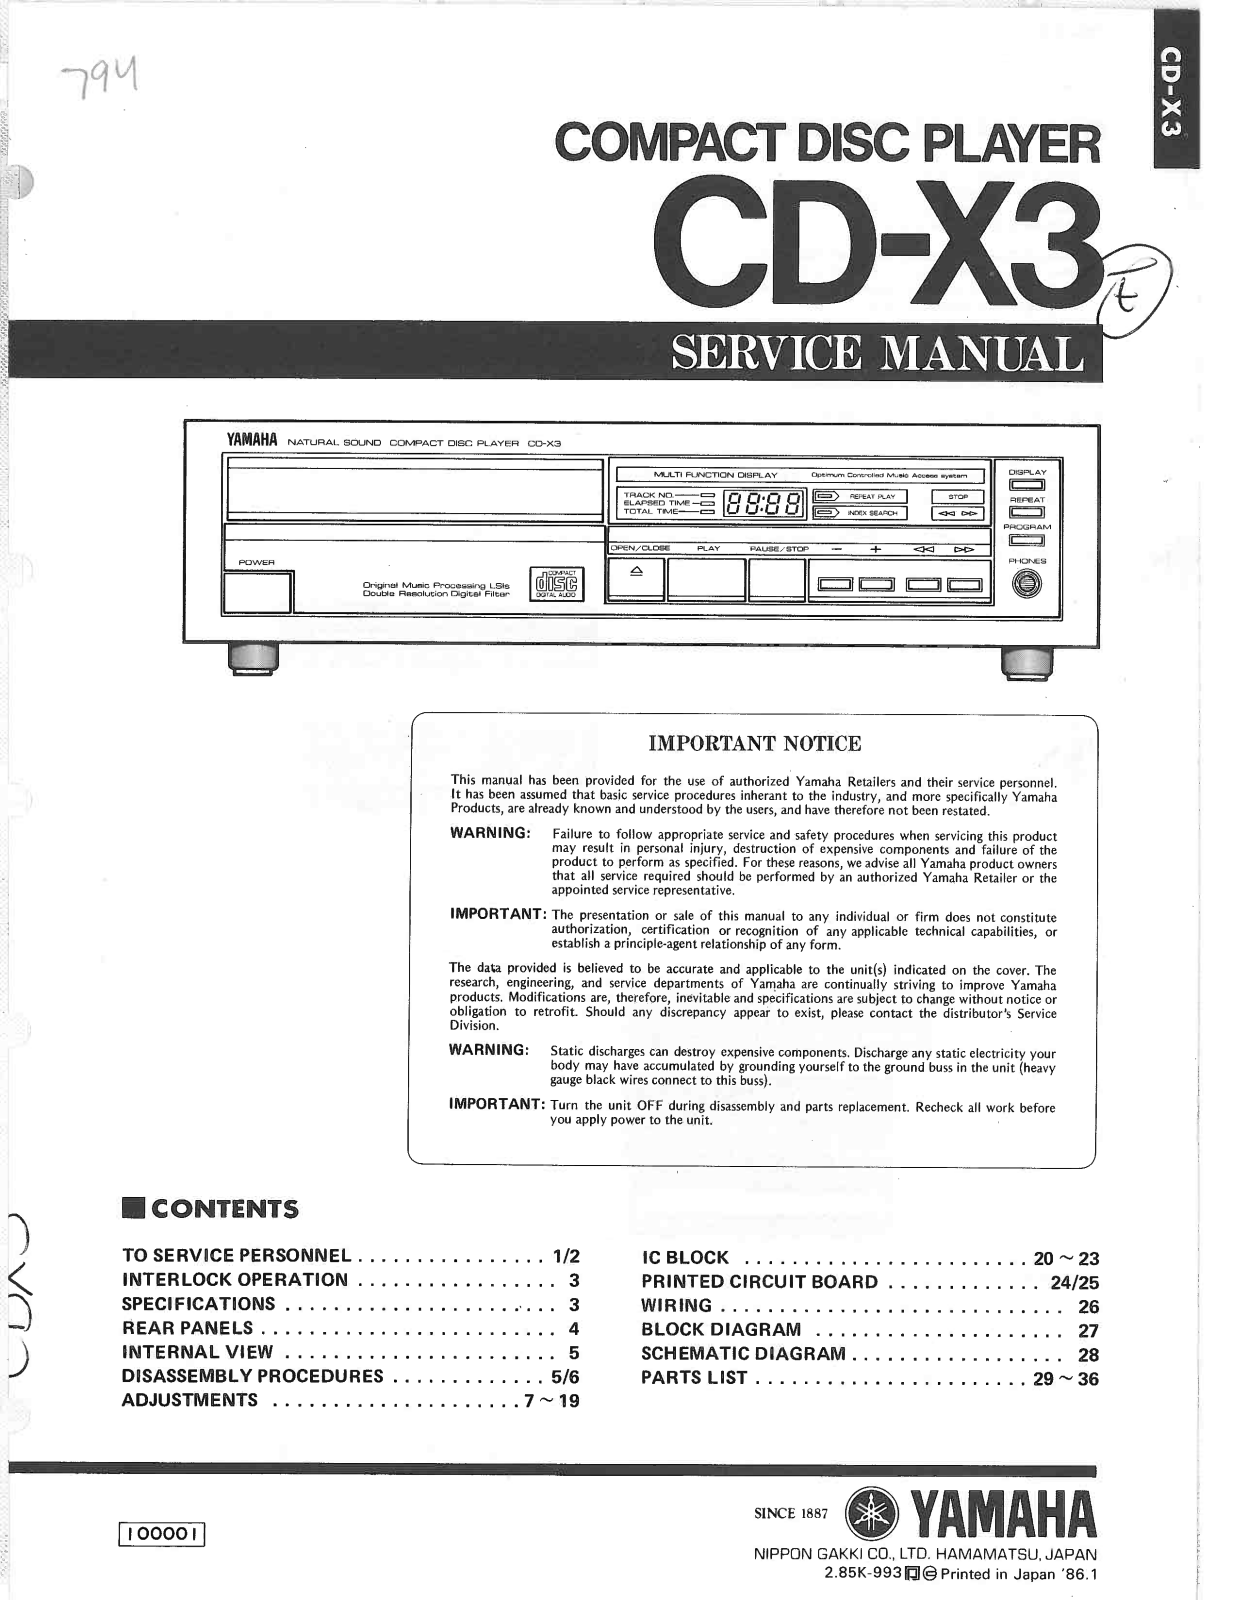 Yamaha CD-X3 Service Manual